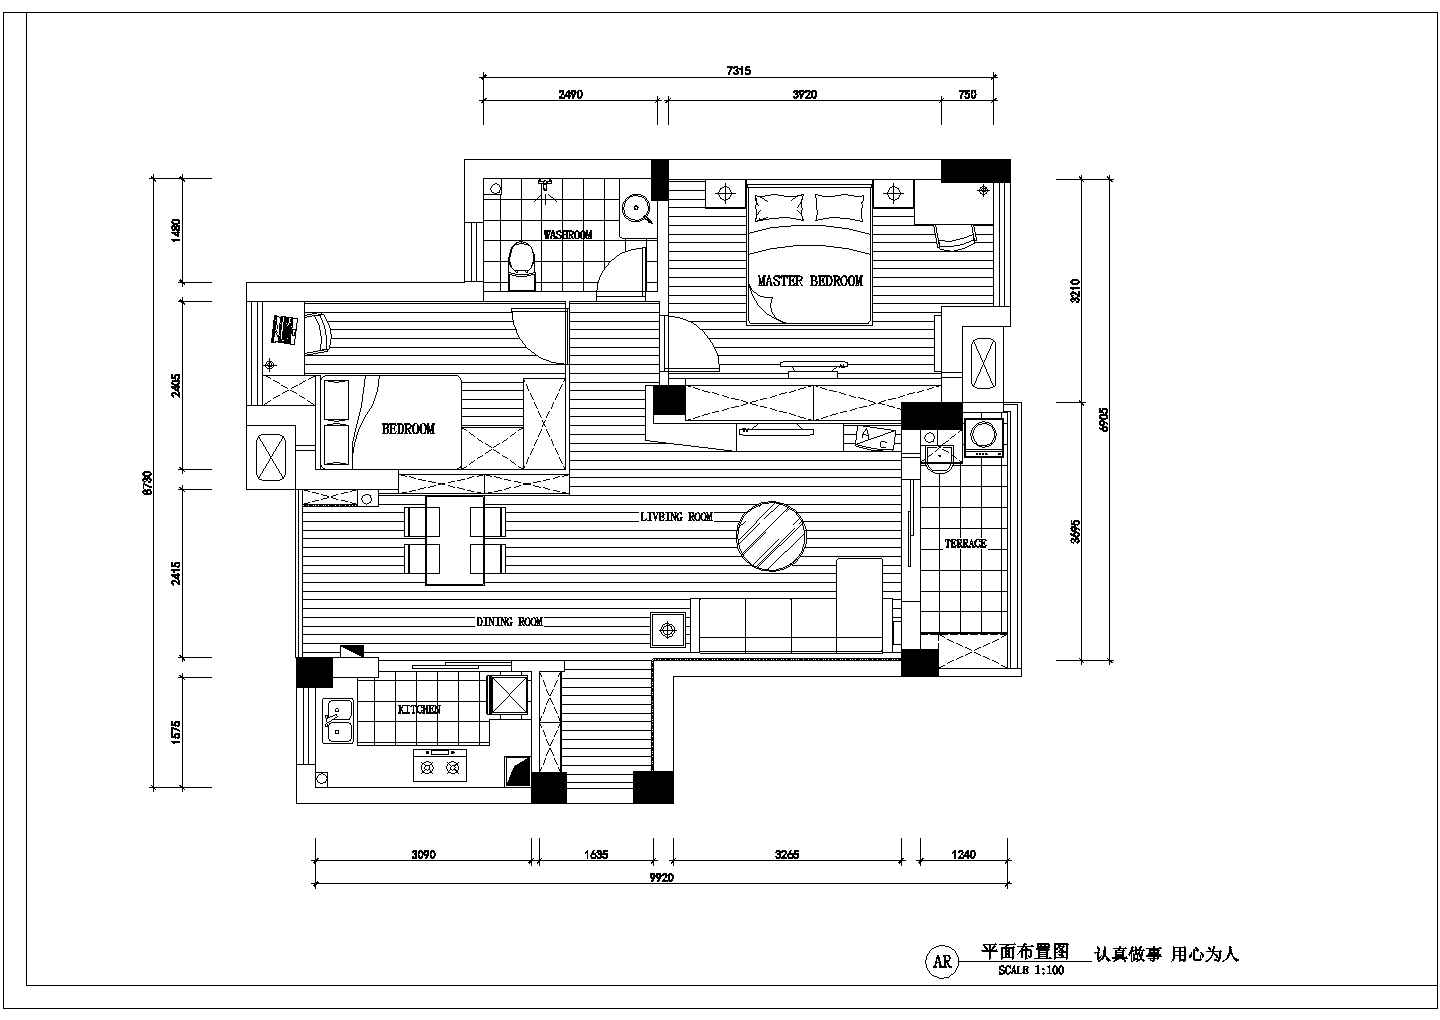 【深圳】宝安区某小区二室二厅装修施工图